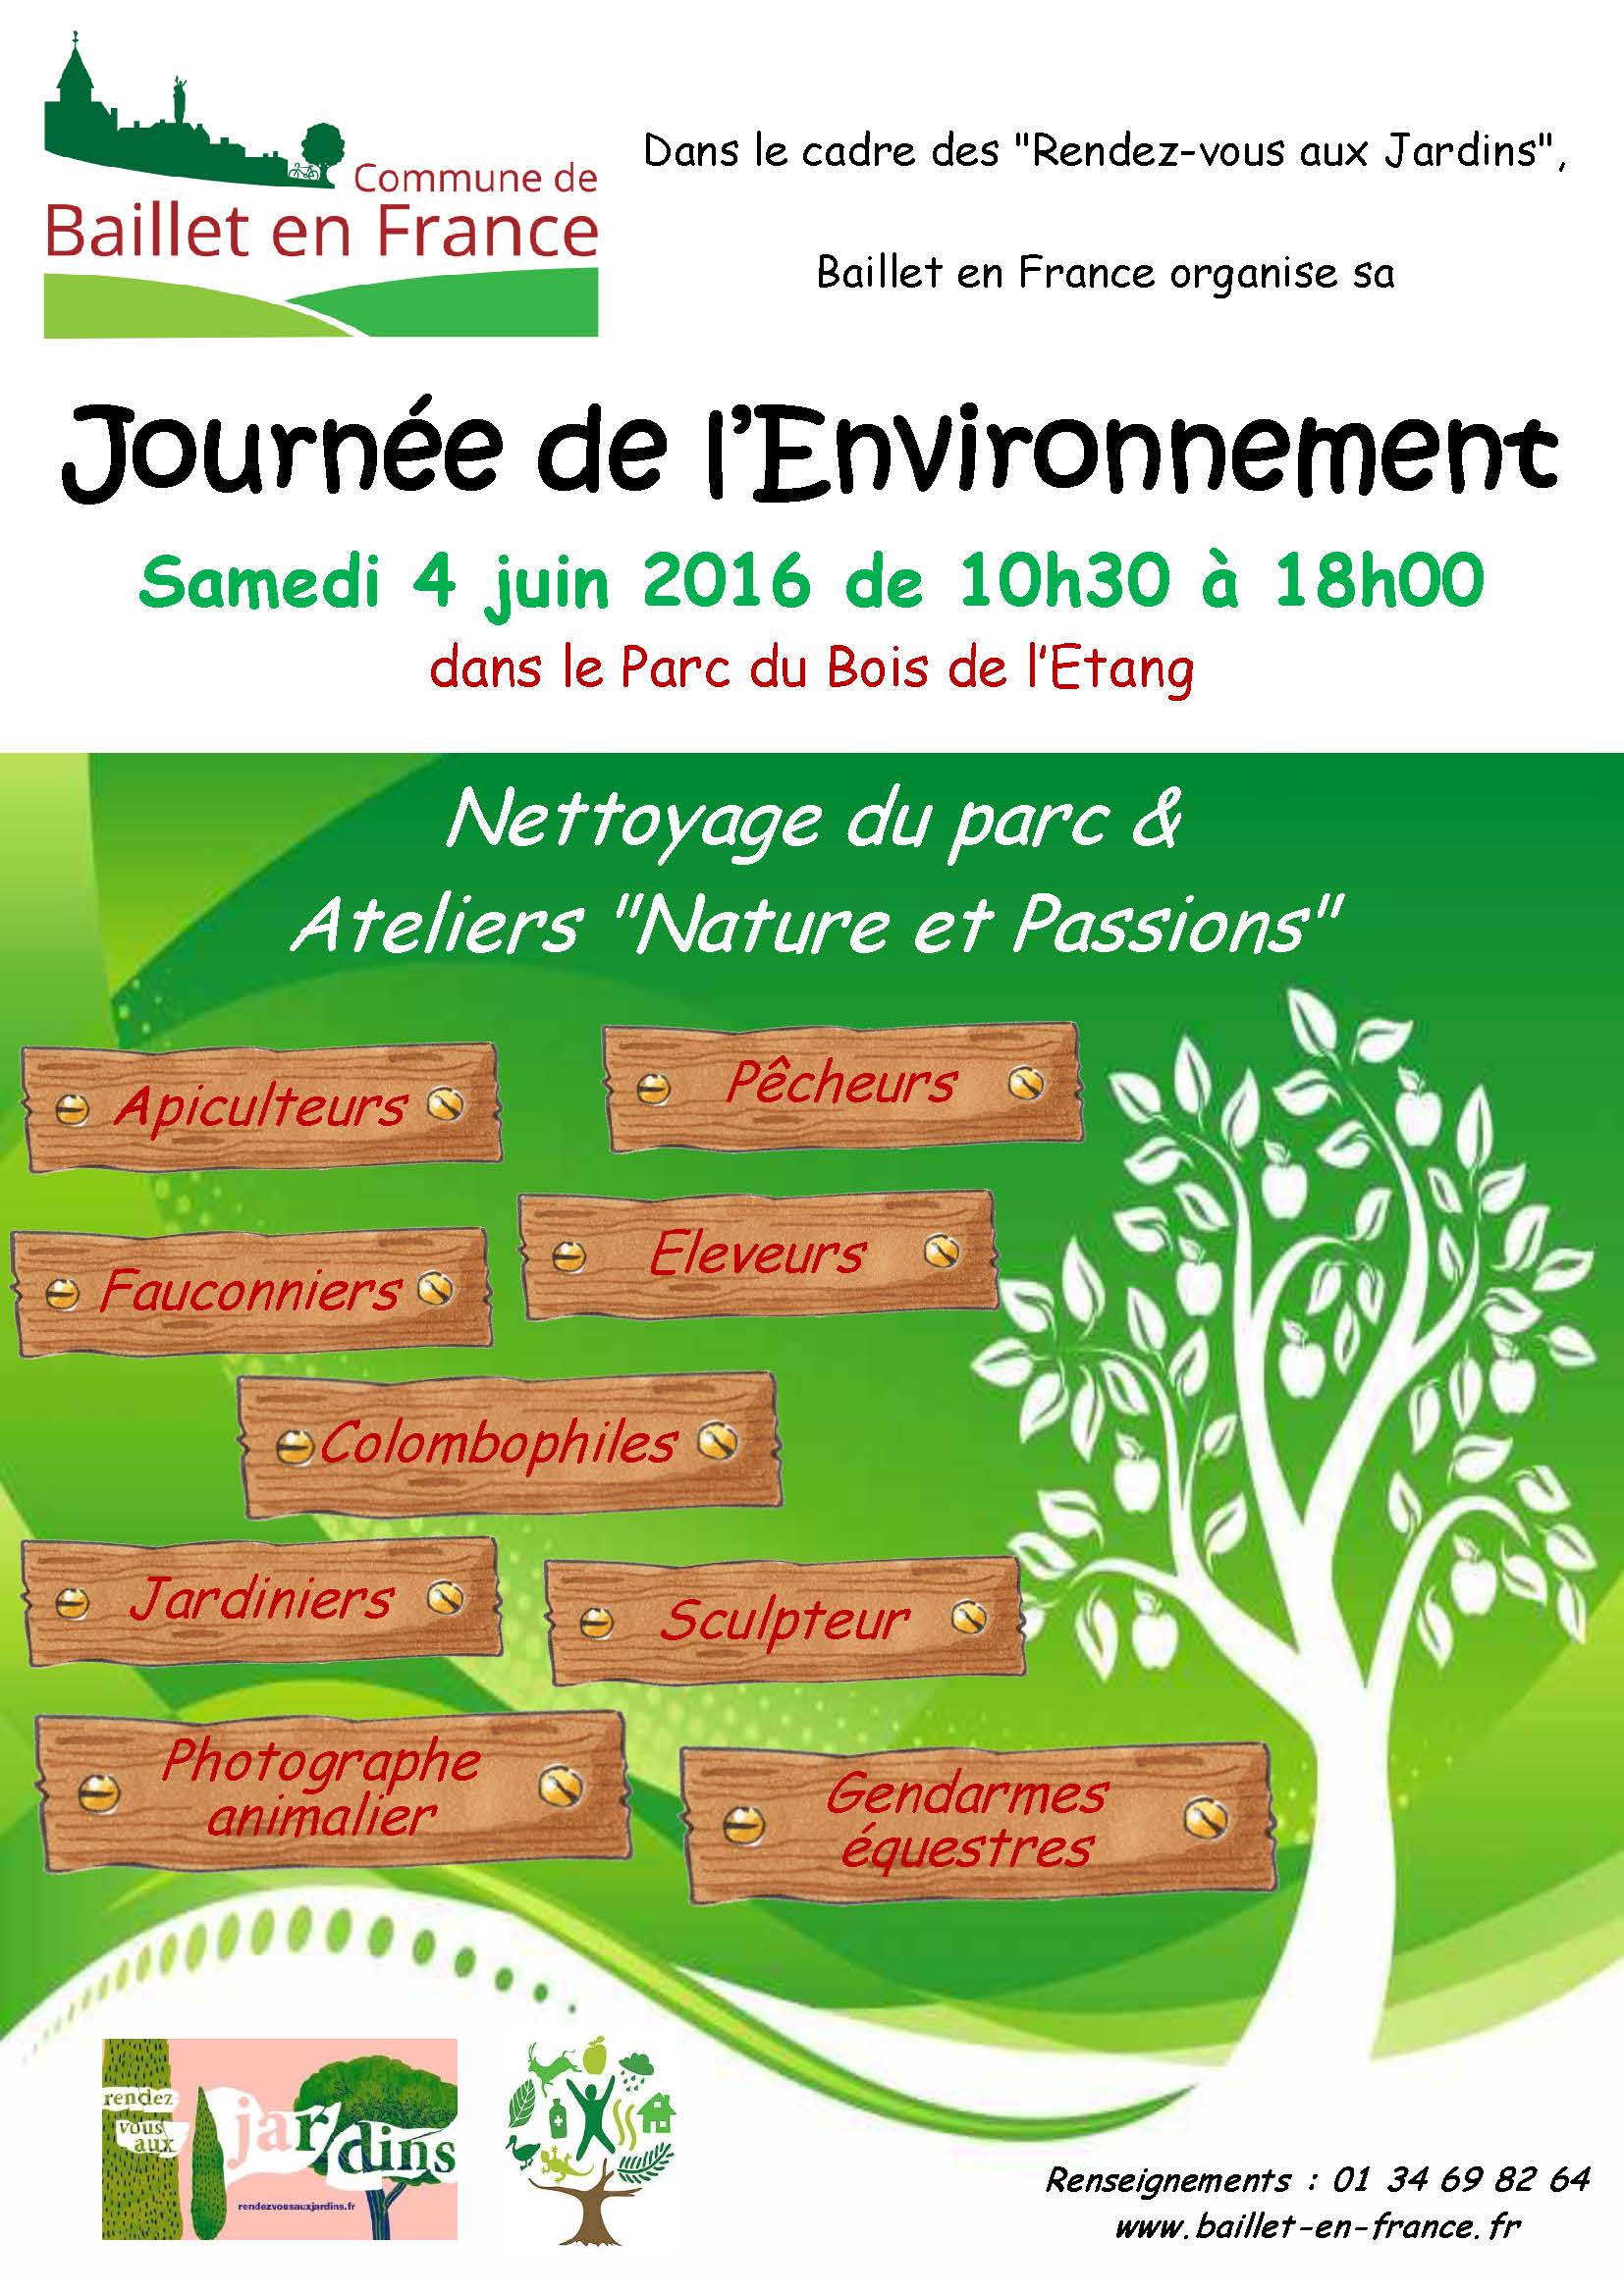 Journée de l’environnement à Baillet en France